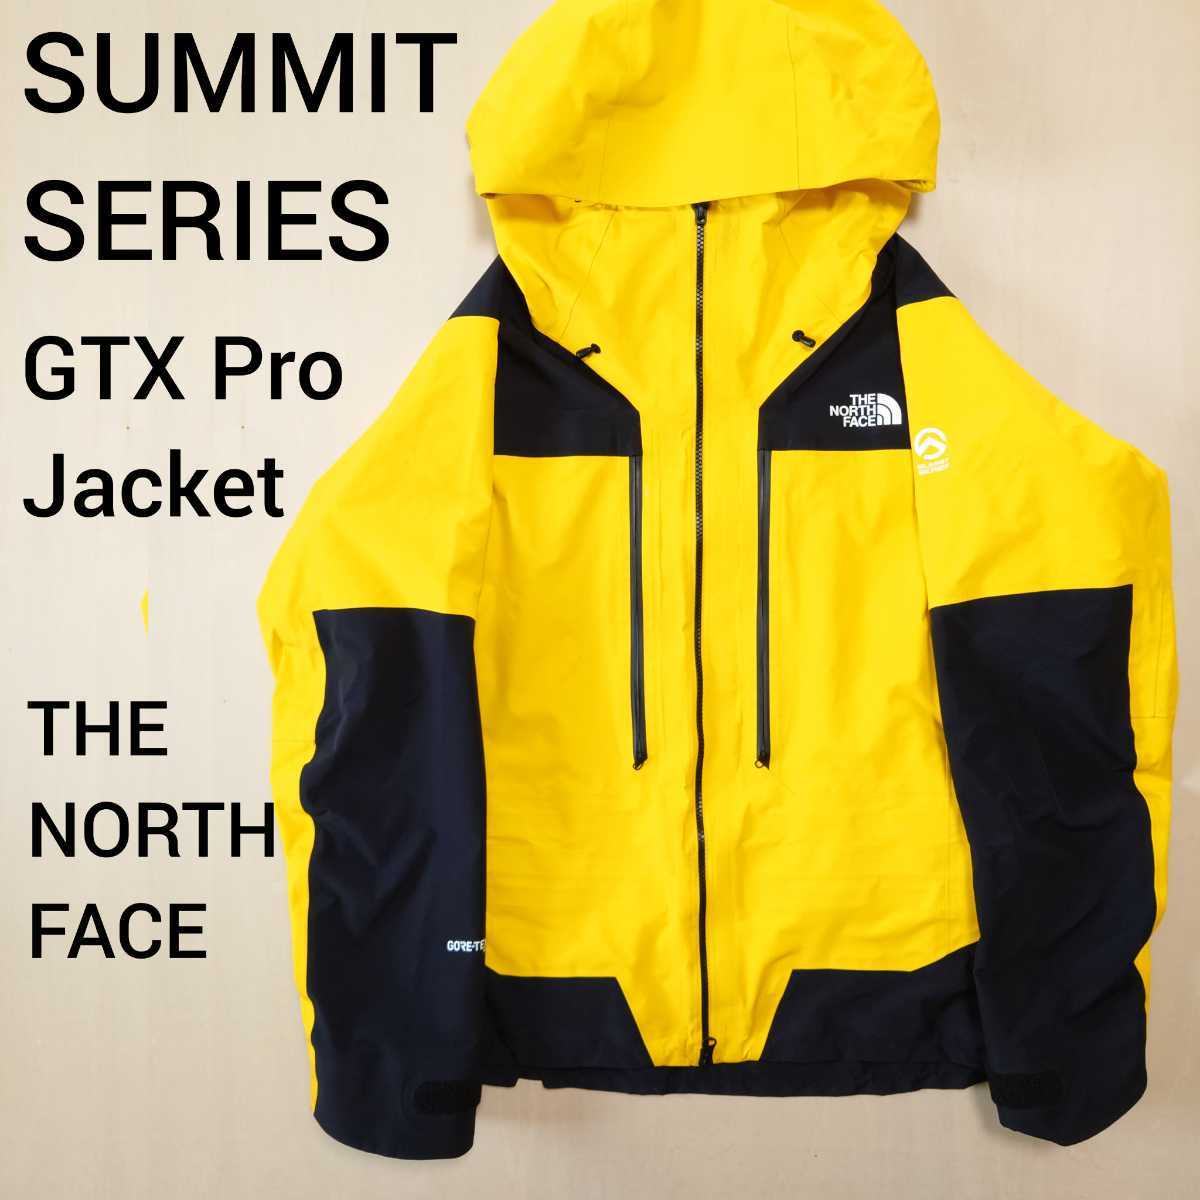 THE NORTH FACE SUMMIT SERIES GTX PRO JACKET ゴアテックス ナイロンジャケット マウンテンパーカー  GORE-TEX ノースフェイス 日本製